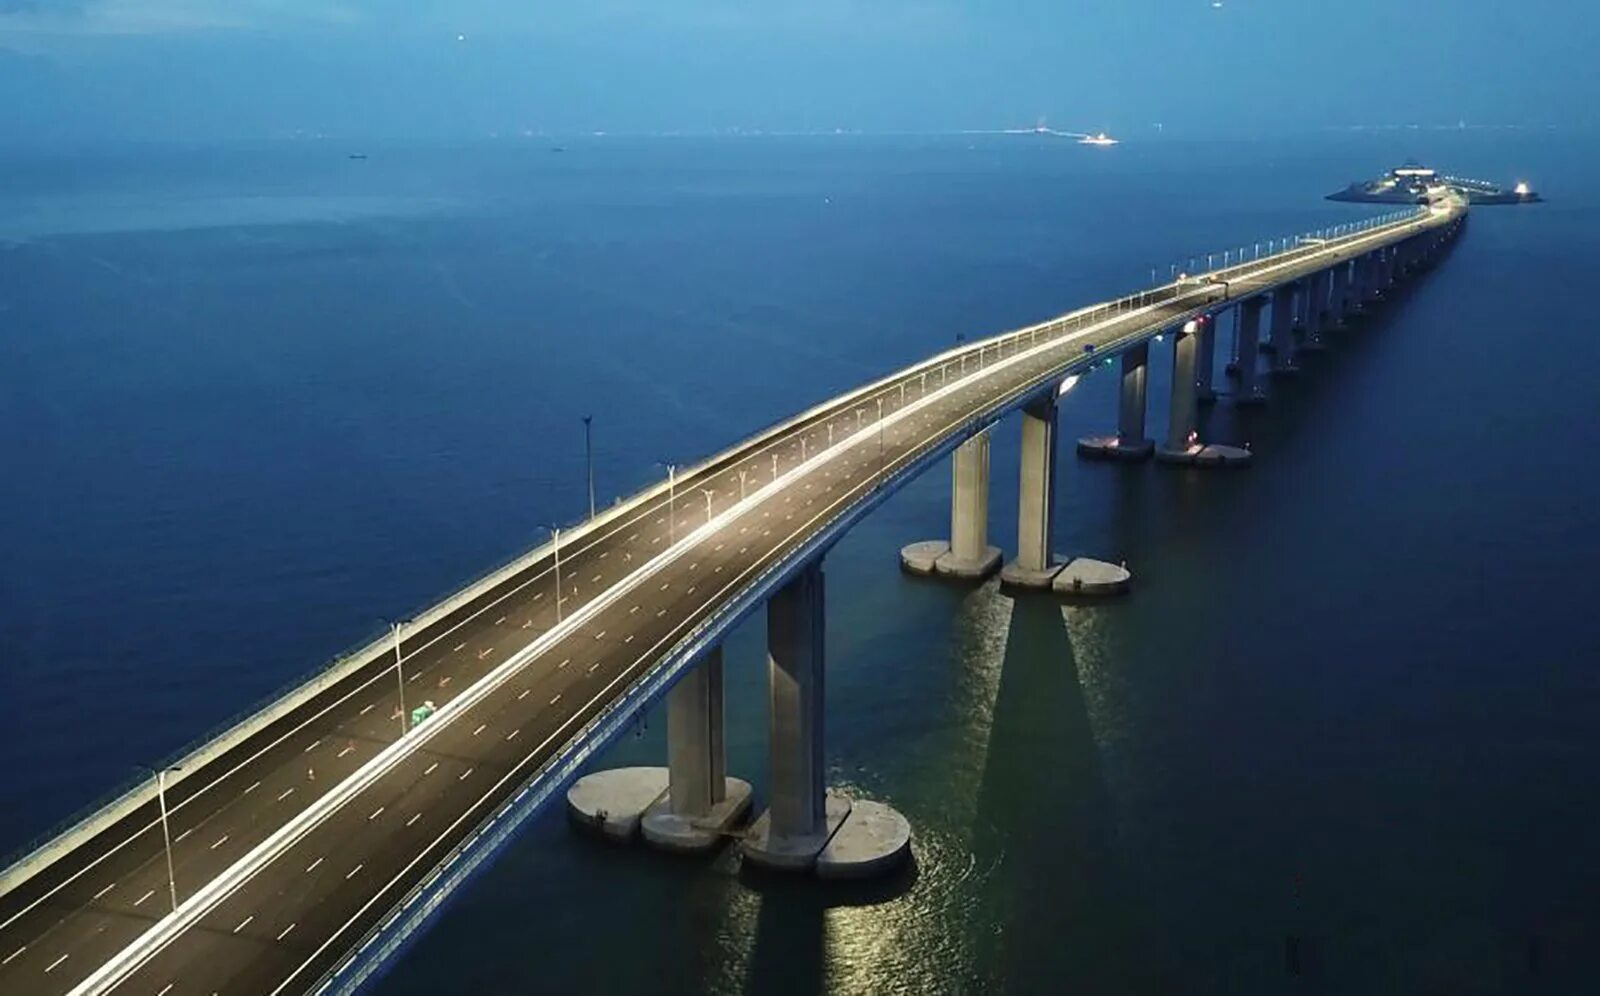 Мост какая система. Мост Гонконг - Чжухай - Макао. Даньян-Куньшаньский виадук Китай. Самый длинный мост в мире Даньян-Куньшаньский виадук. Моск Гонконг Чжухай Макао.